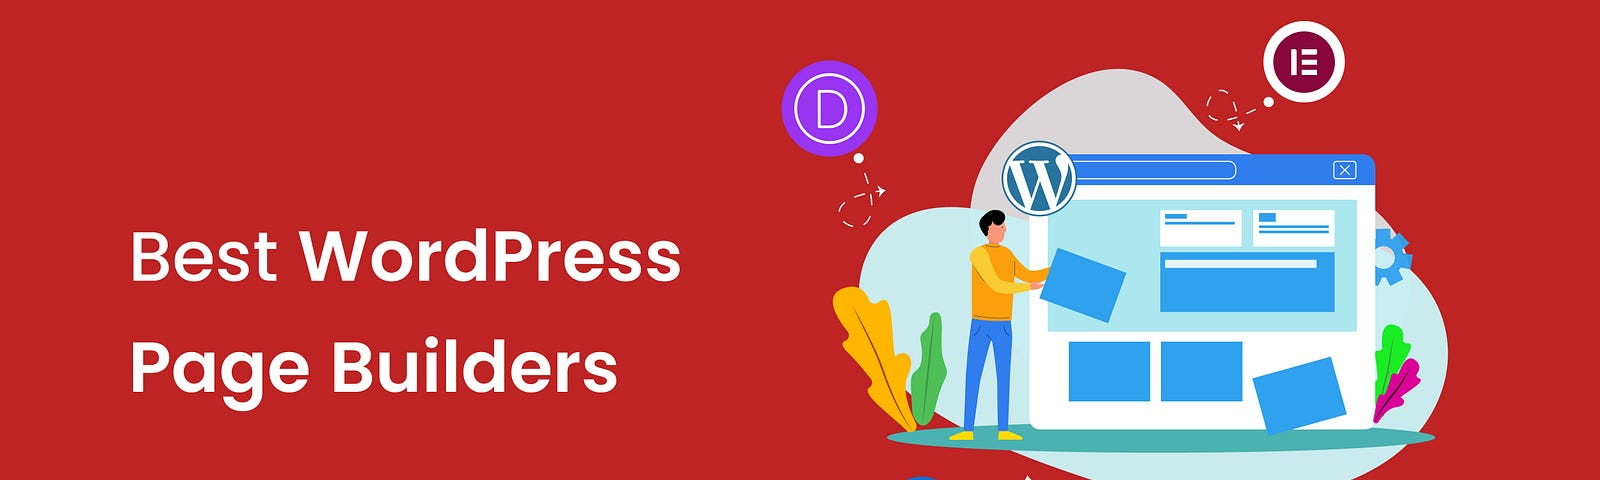 Best-WordPress-Page-Builders